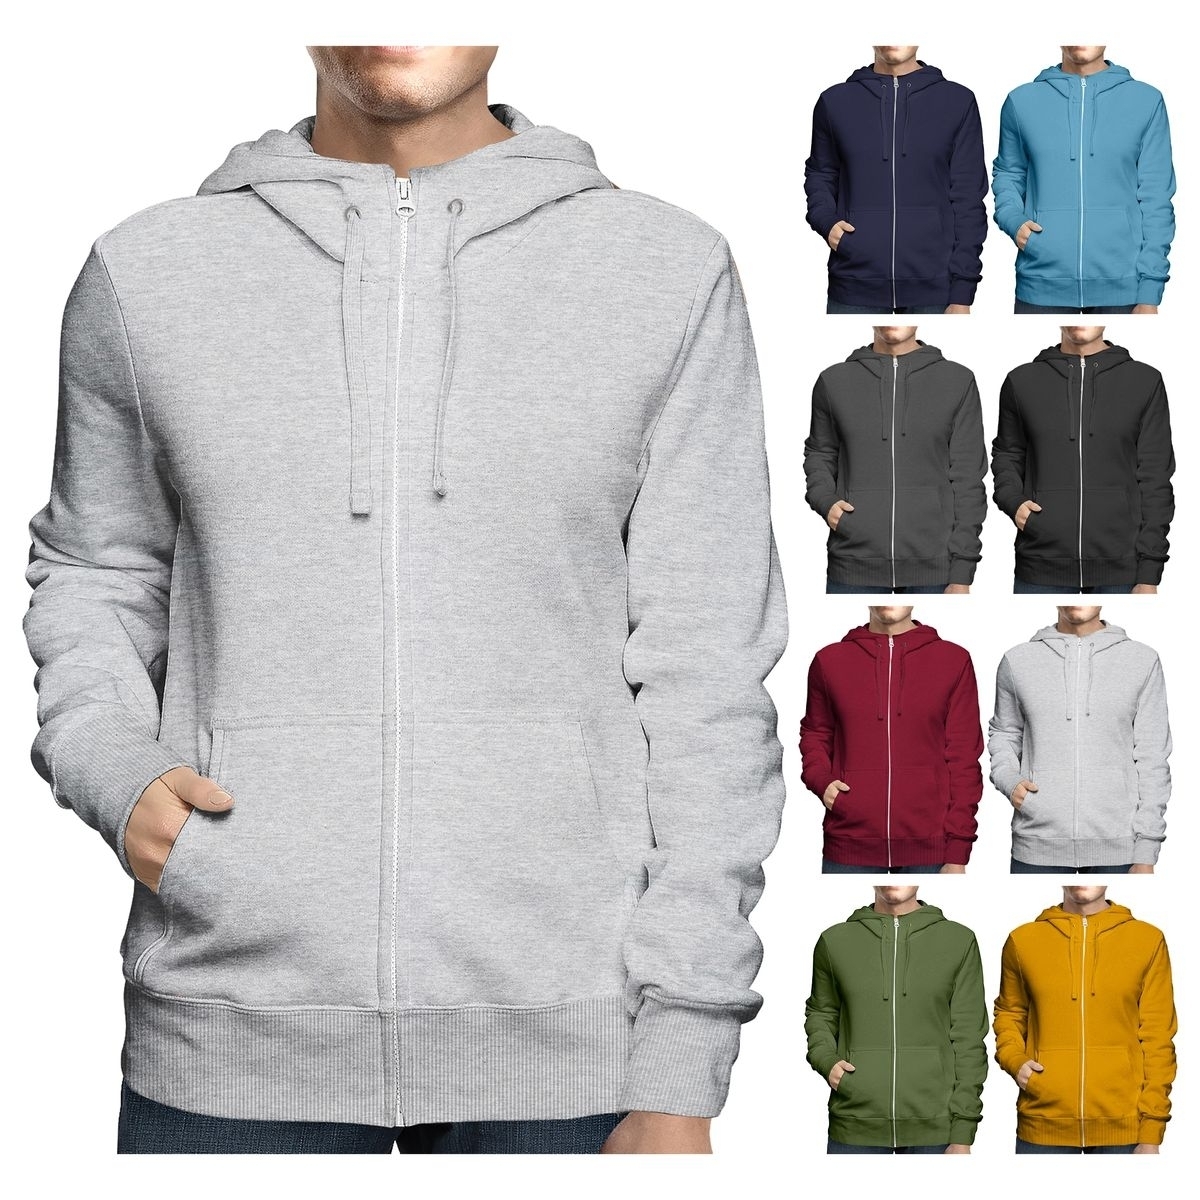 Men's Big & Tall Winter Warm Soft Cozy Full Zip-Up Fleece Lined Hoodie Sweatshirt - Charcoal, Large